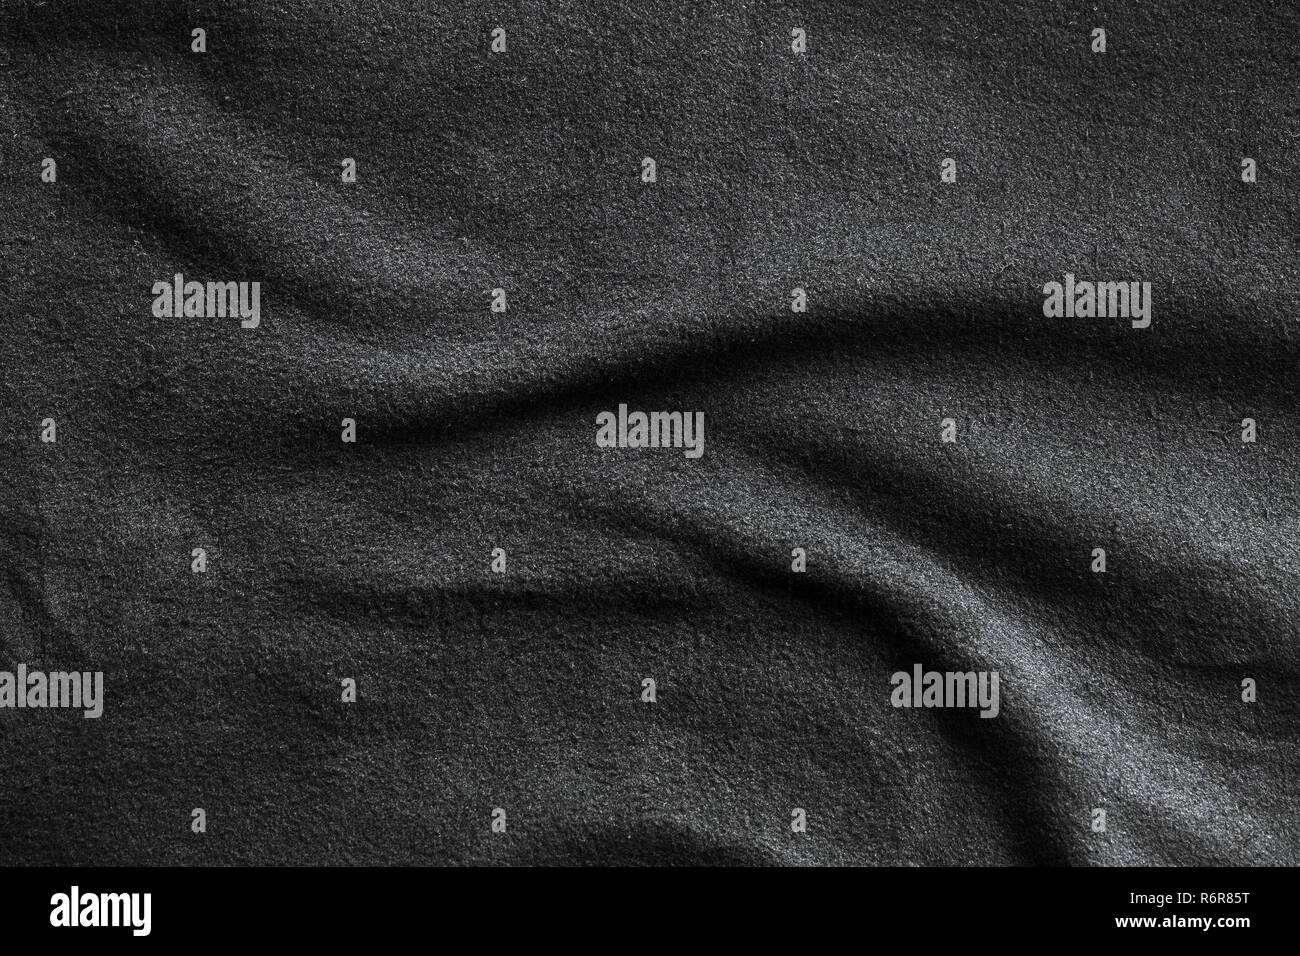 La texture de polar, doux tissu isolant molletonnée fabriqués à partir de polyester, motif vagues Banque D'Images